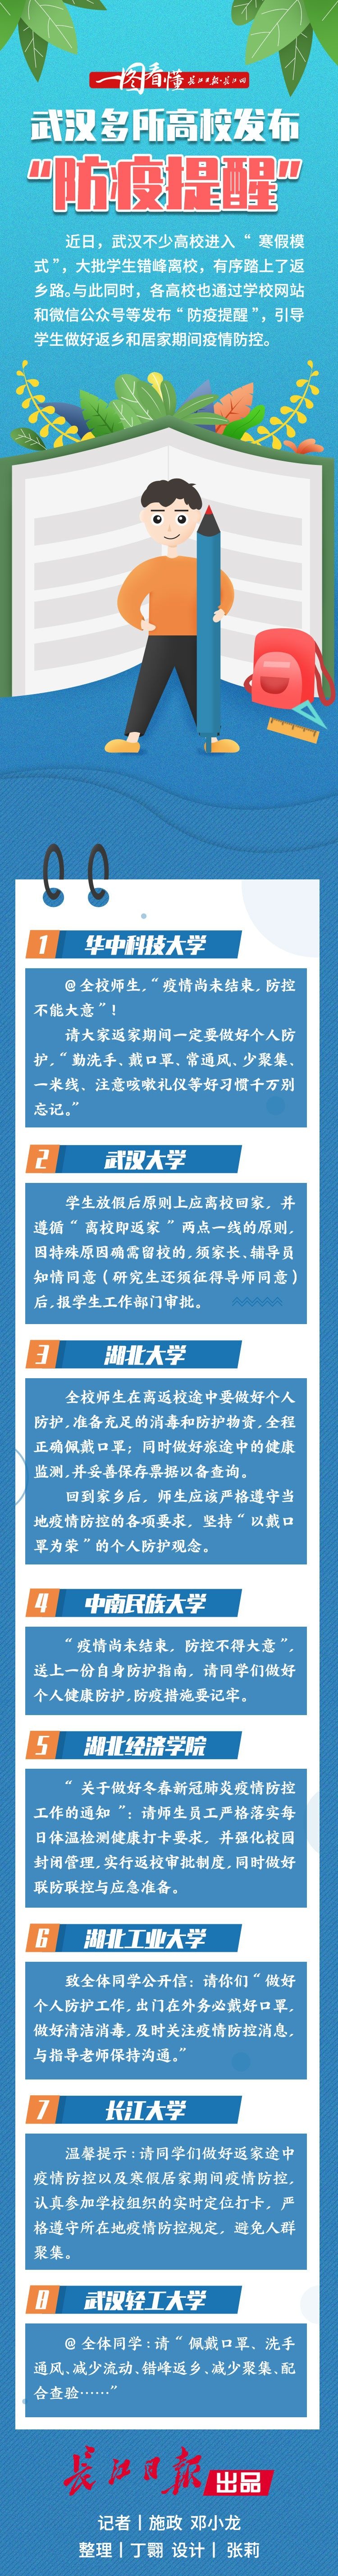 武汉多所高校发布“防疫提醒” ｜一图看懂